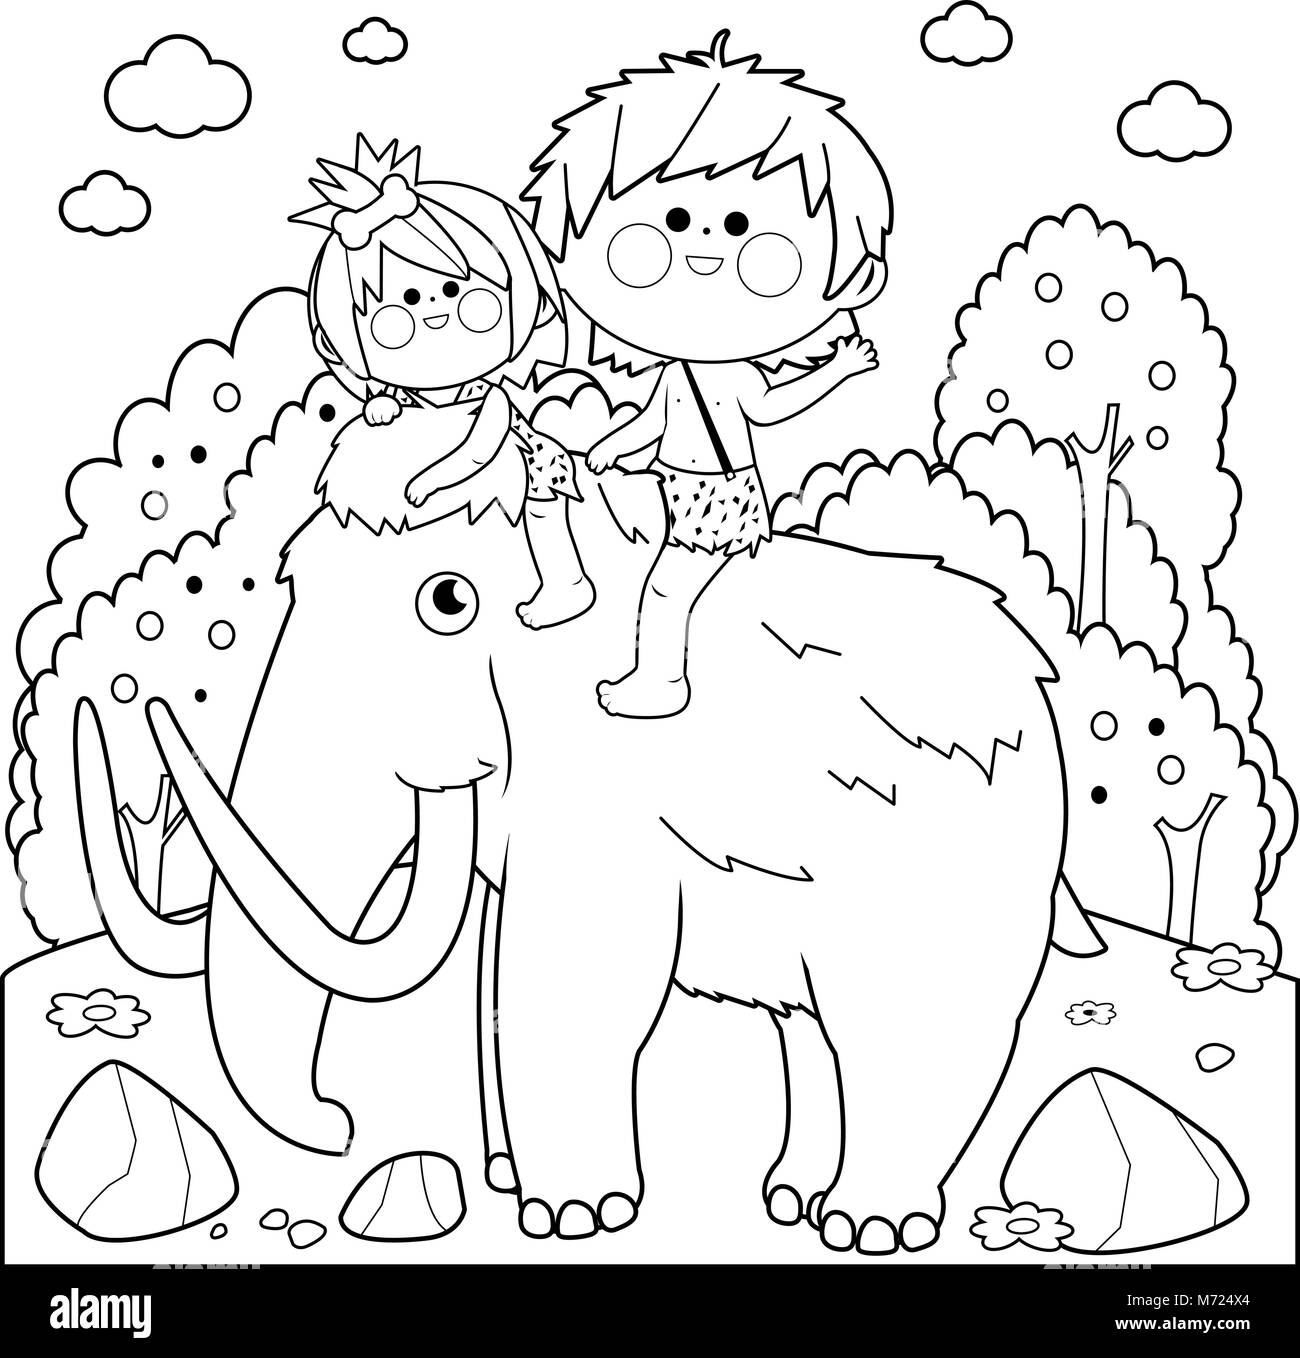 Paesaggio preistorico con bambini a cavallo di un mammut. In bianco e nero la colorazione di pagina del libro Illustrazione Vettoriale